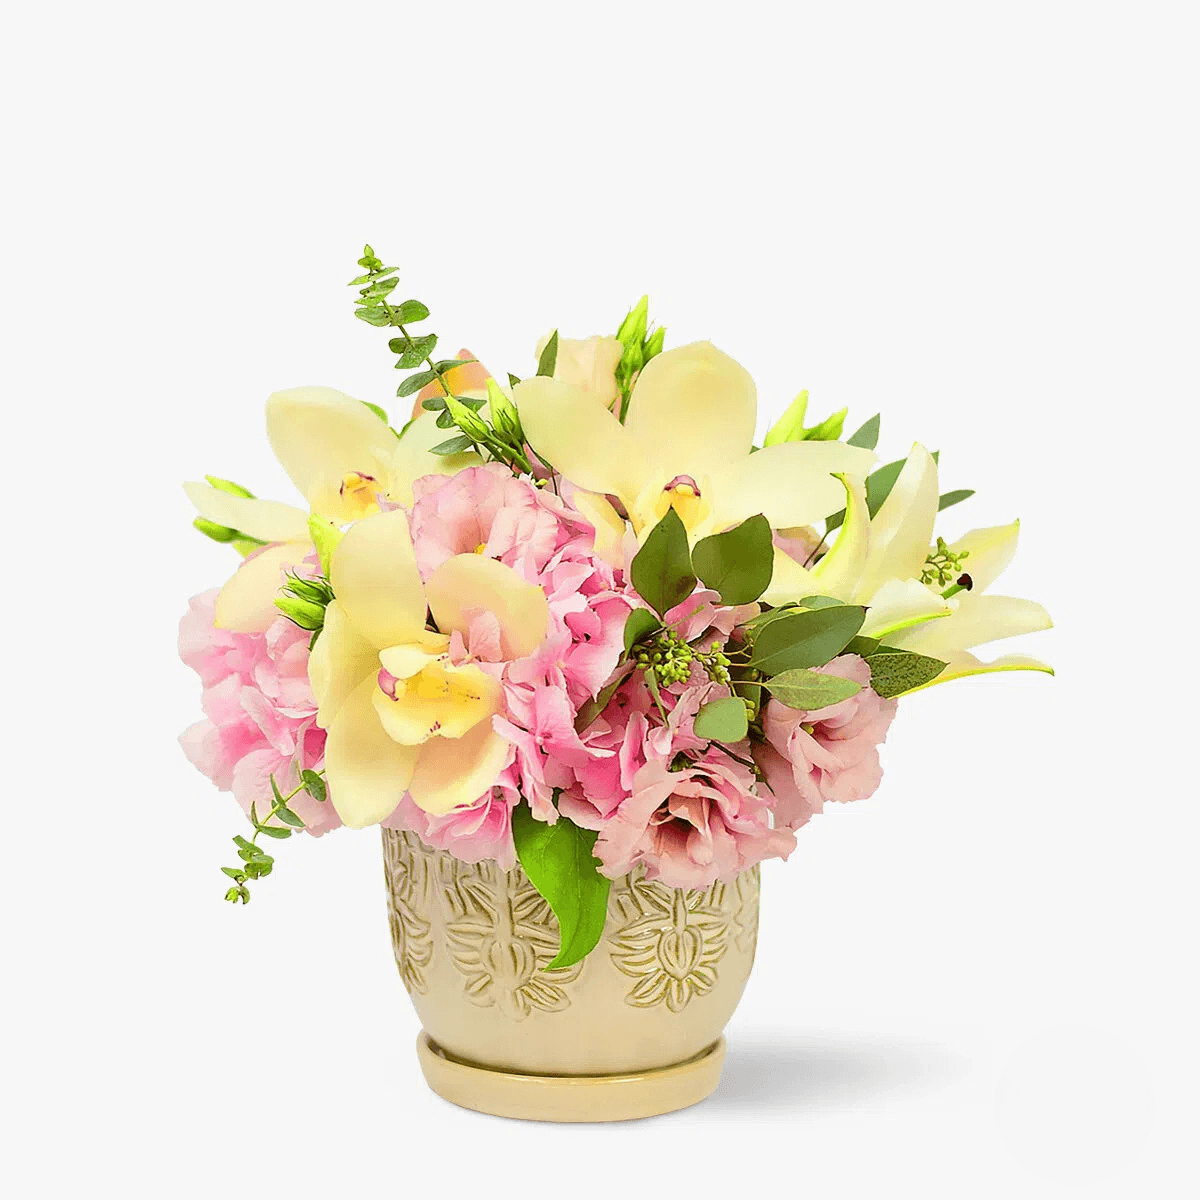 Buchet de flori – Aranjament floral Elegant – Standard Aranjament imagine 2022